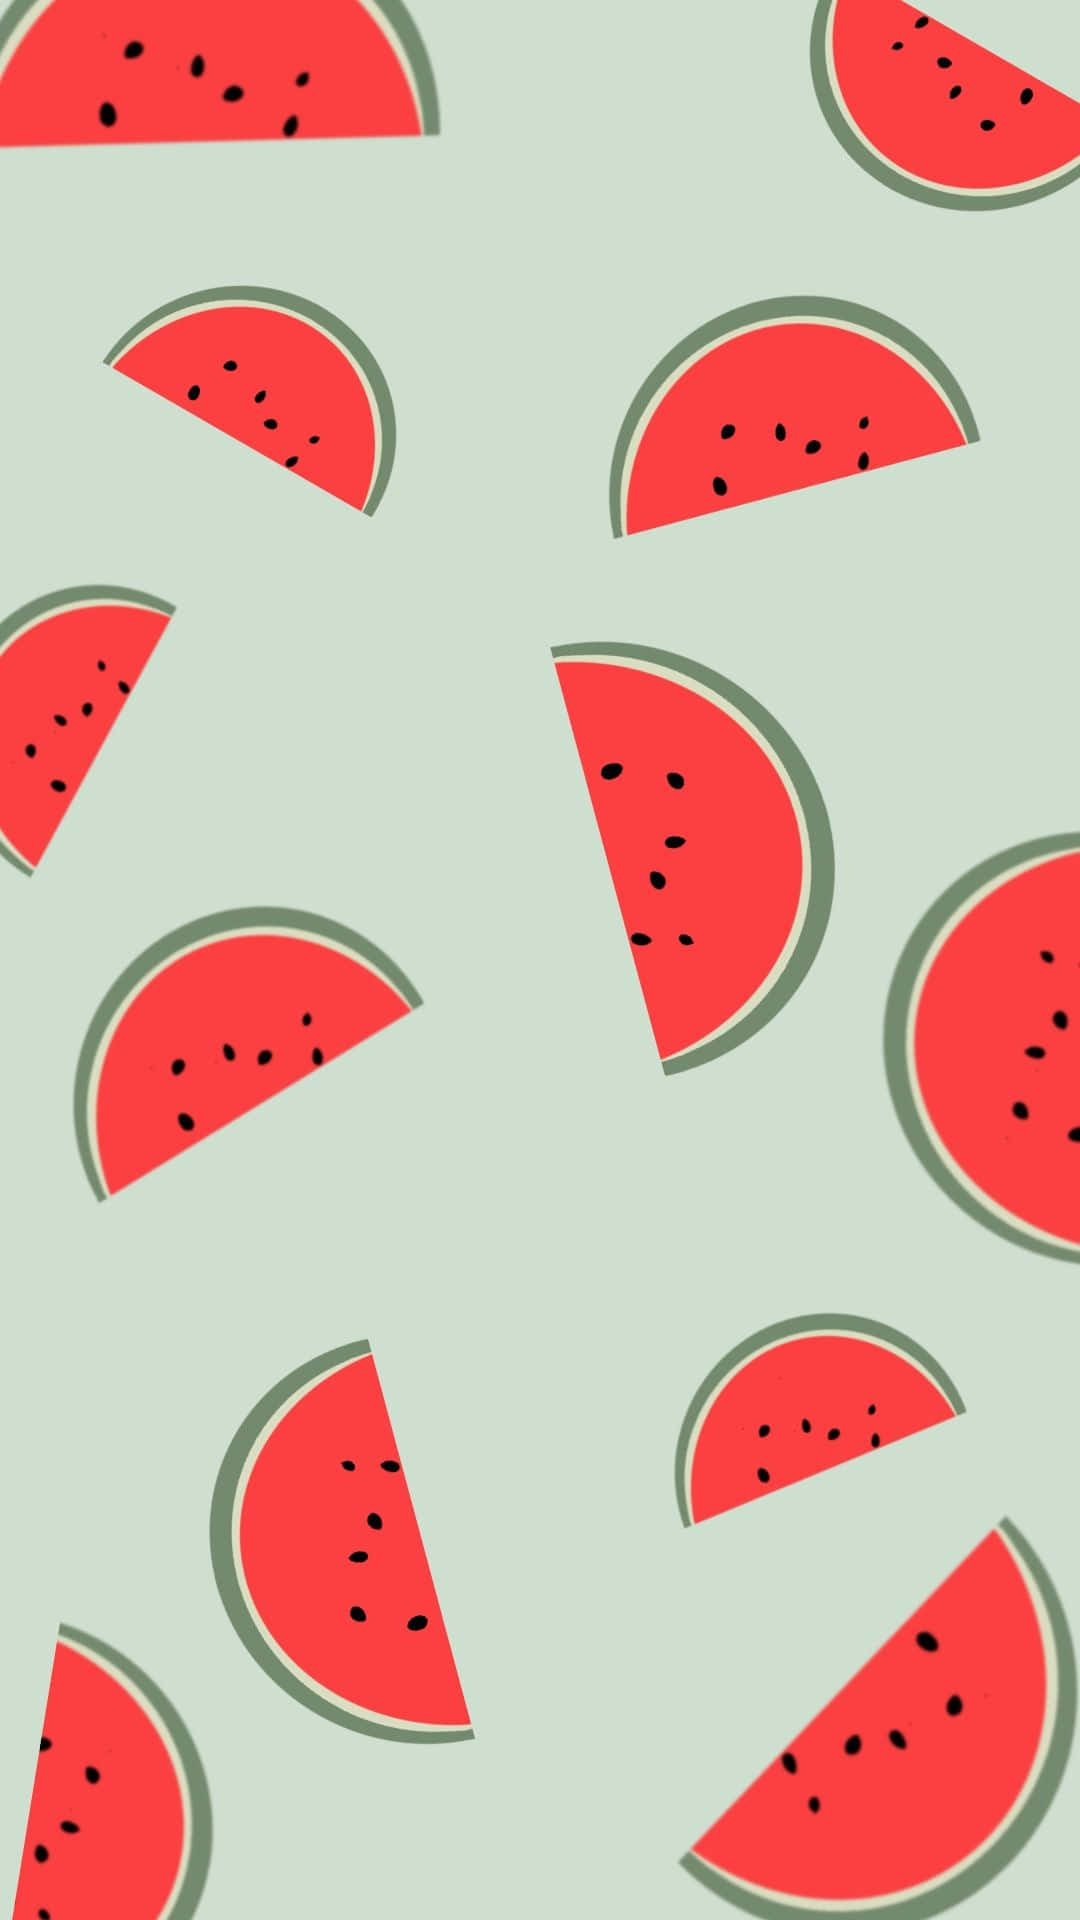 Bildskärmuppfriskande Och Kul - Vattenmelon Iphone Bakgrundsbild. Wallpaper